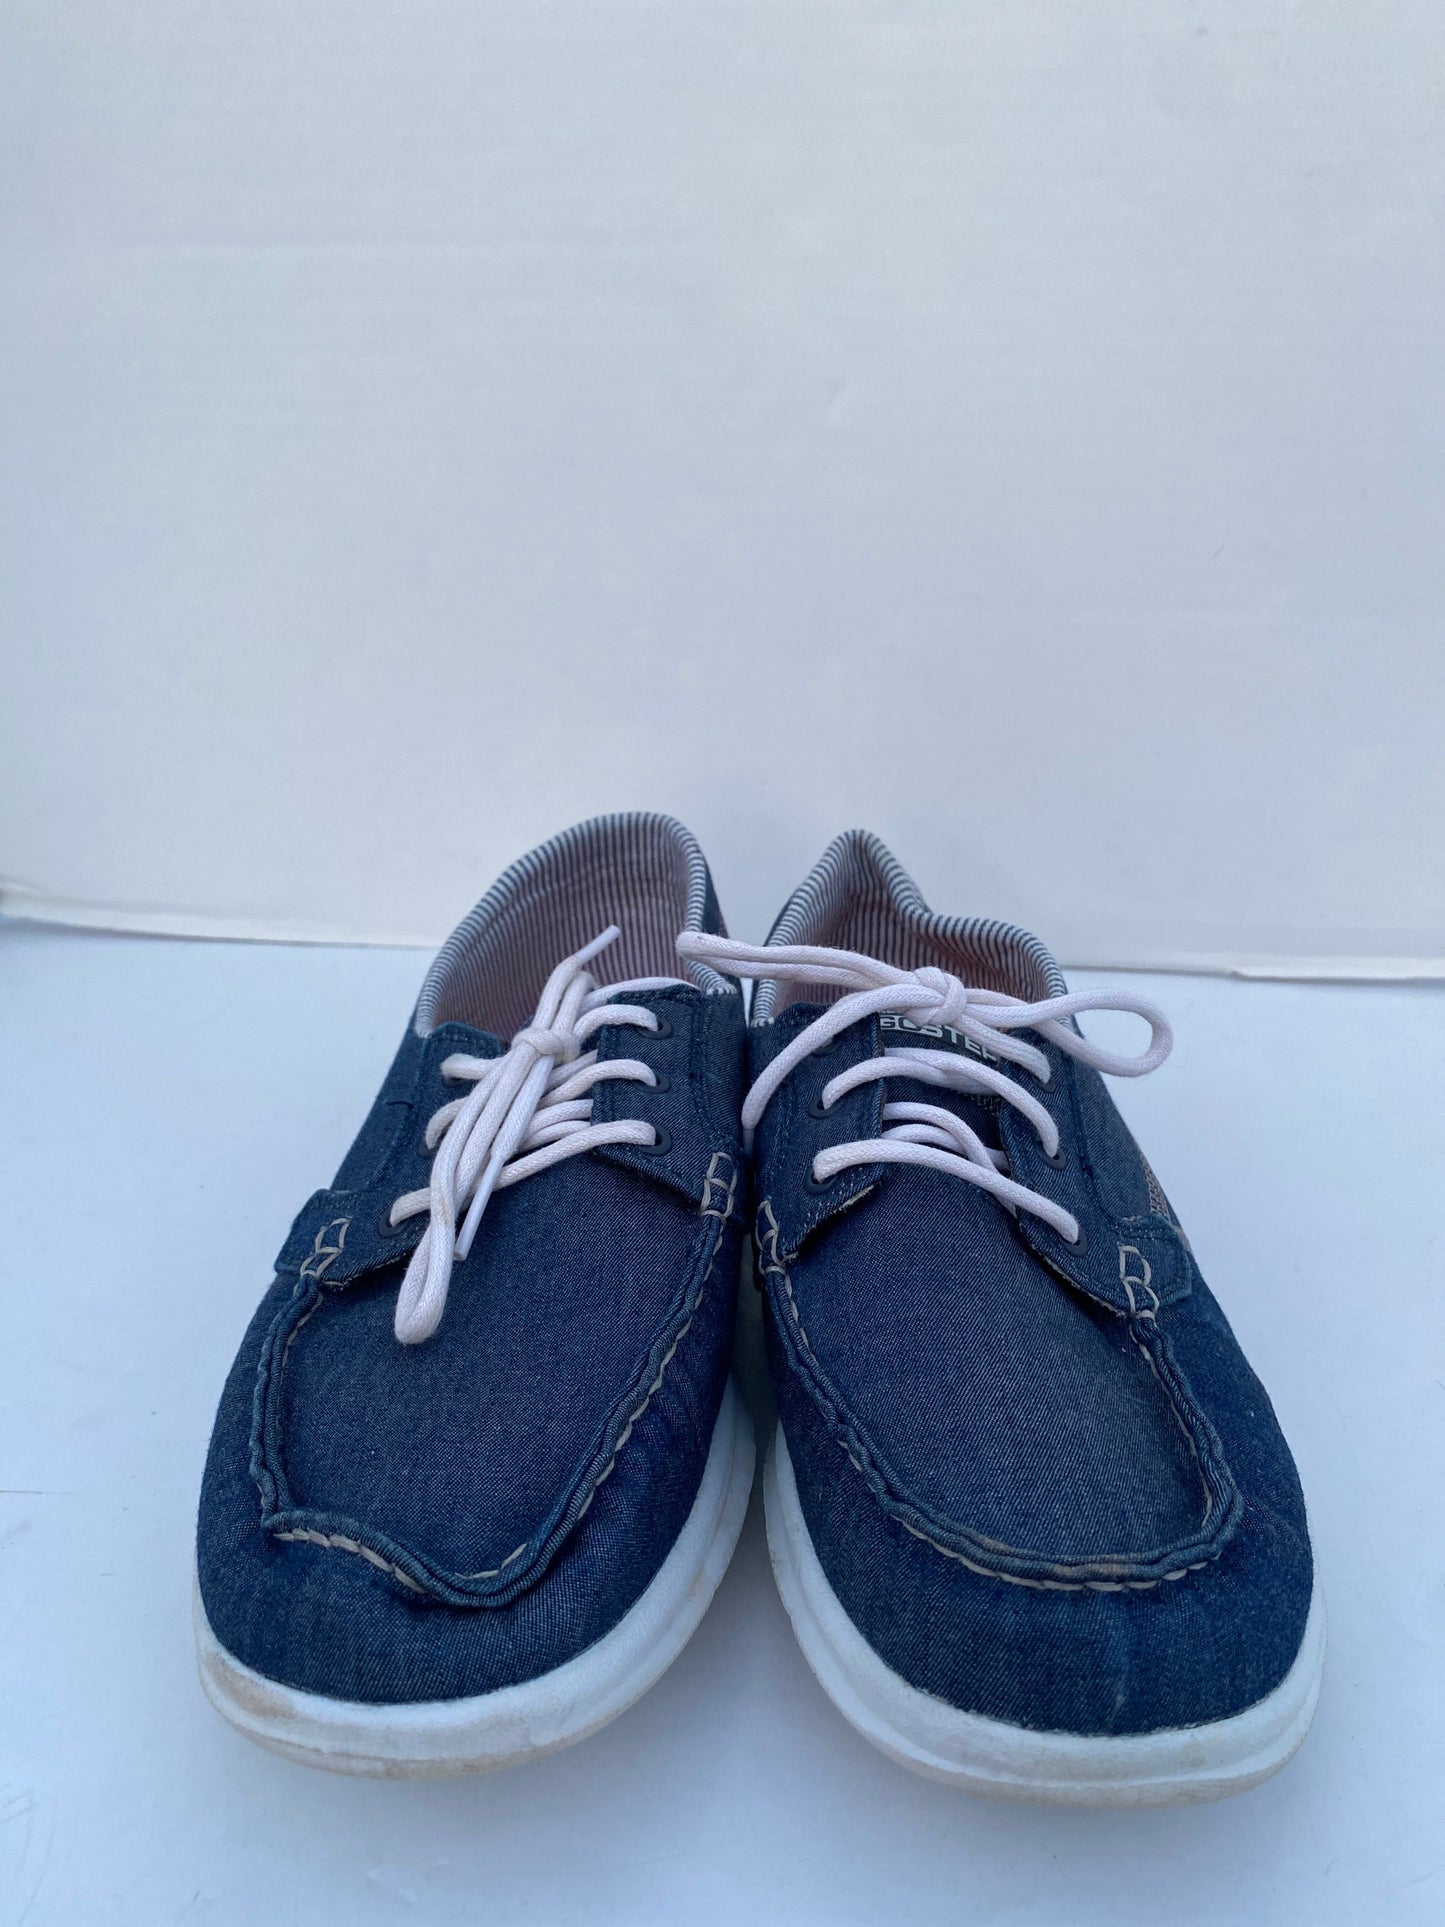 Blue Shoes Flats Skechers, Size 8.5